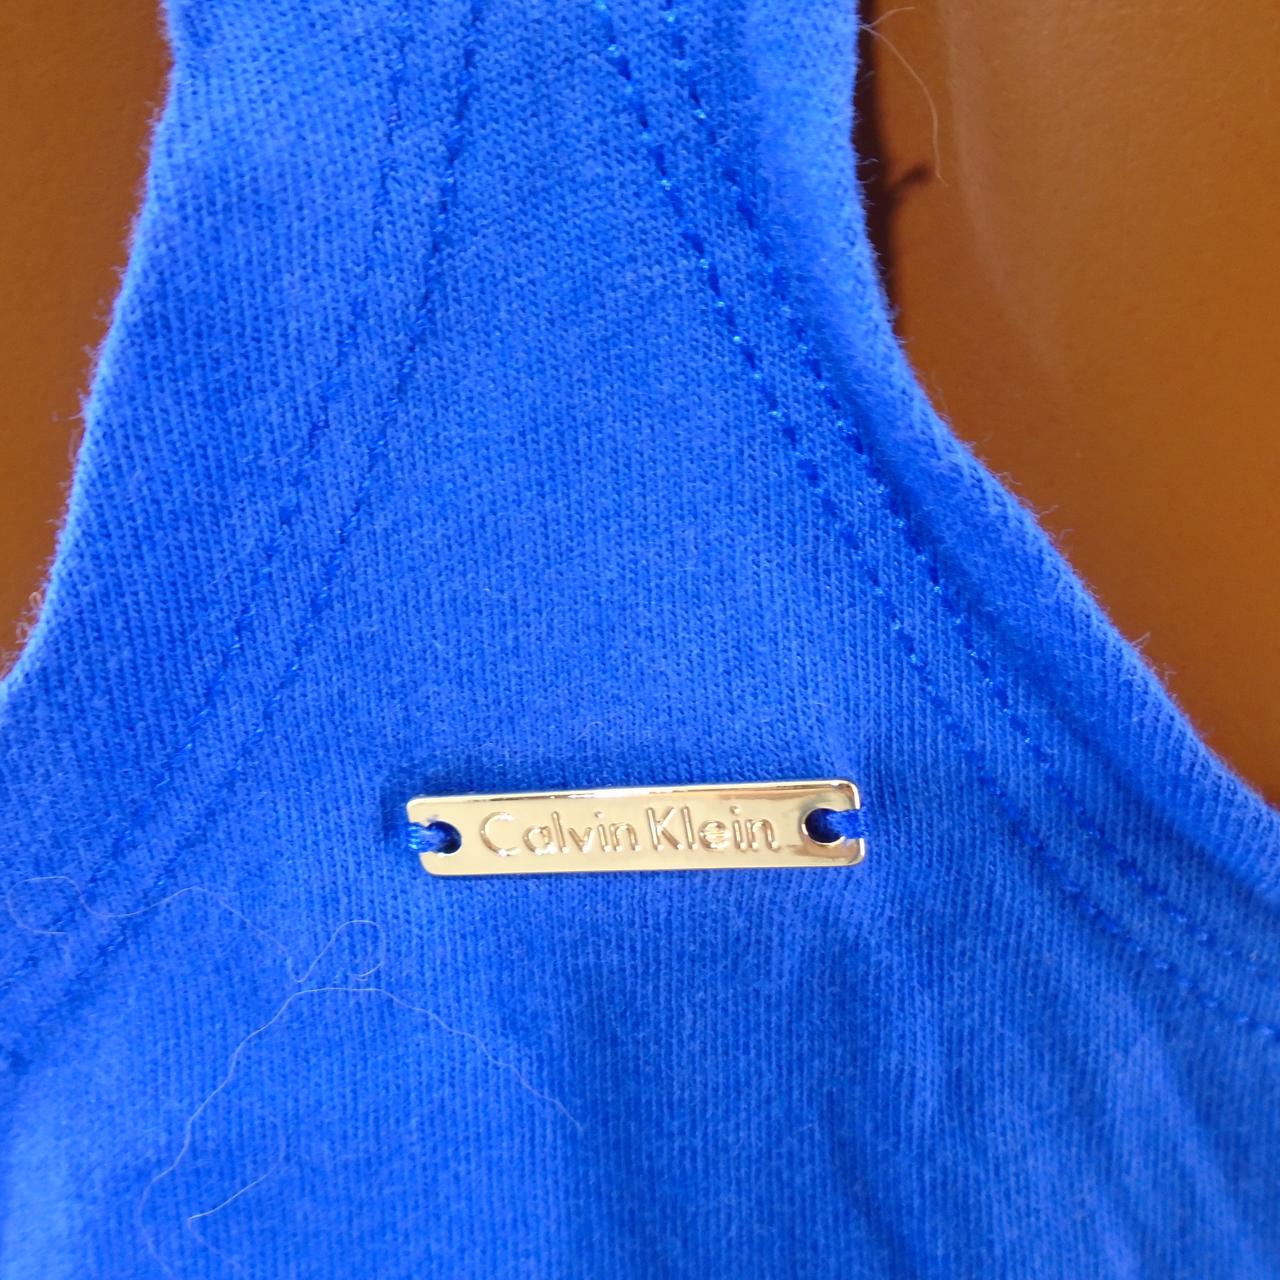 Women's Shorts Calvin Klein. Dark blue. M. Used. Very good